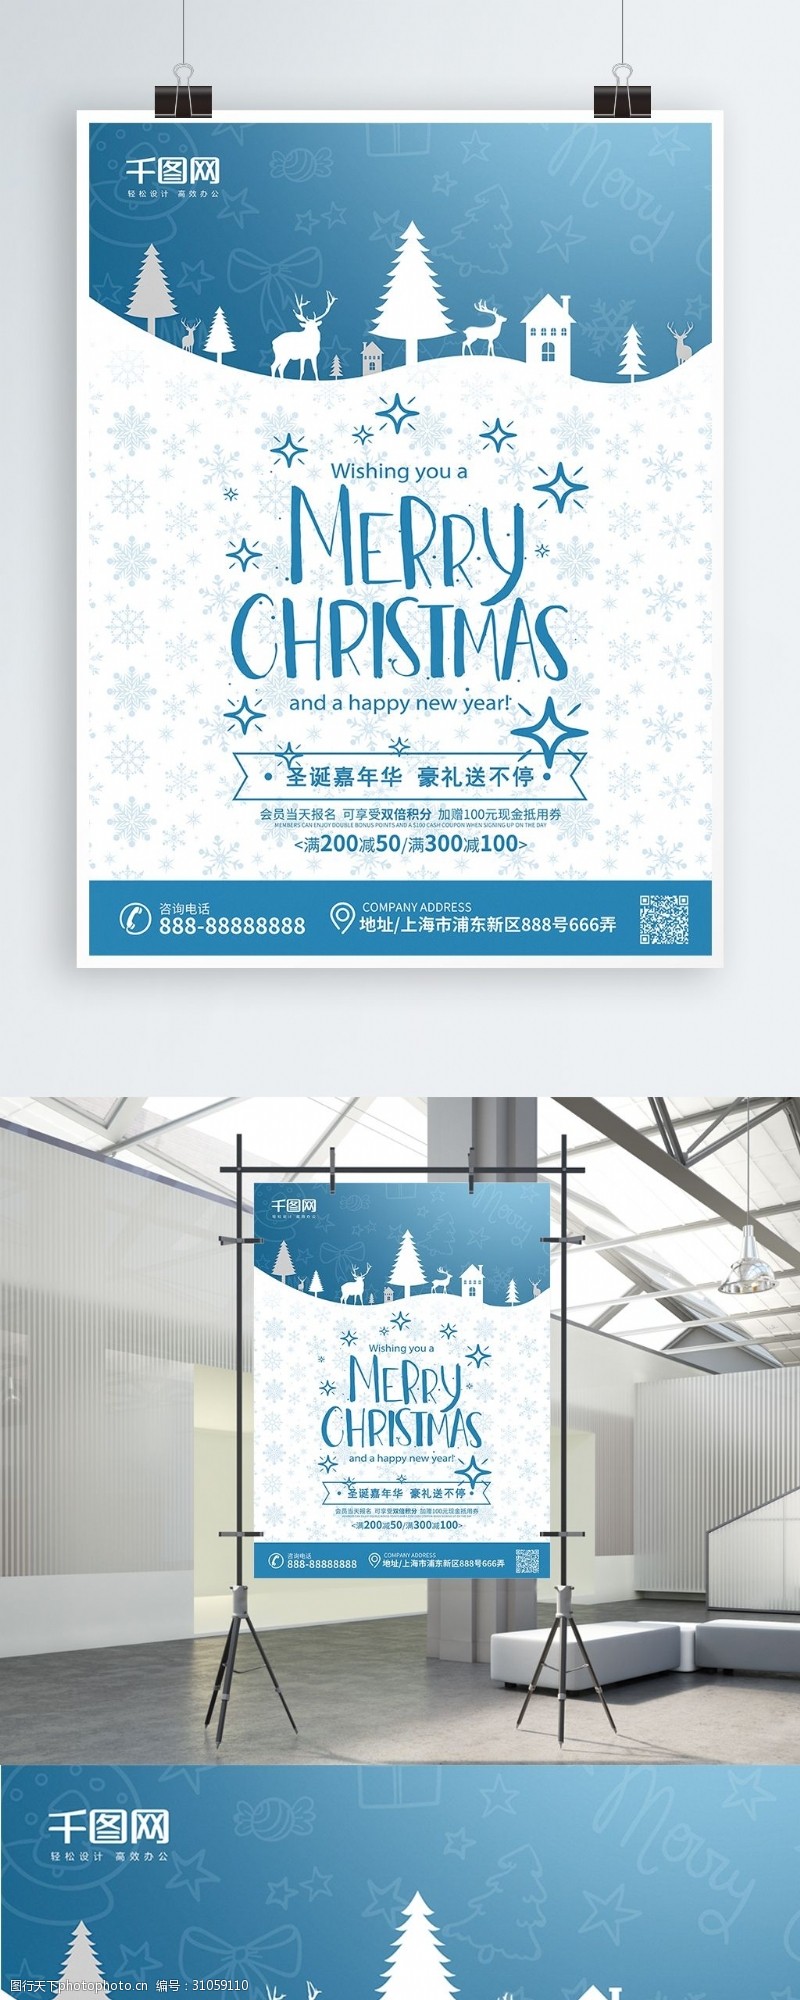 原创剪纸原创冰蓝色剪纸风圣诞节促销海报